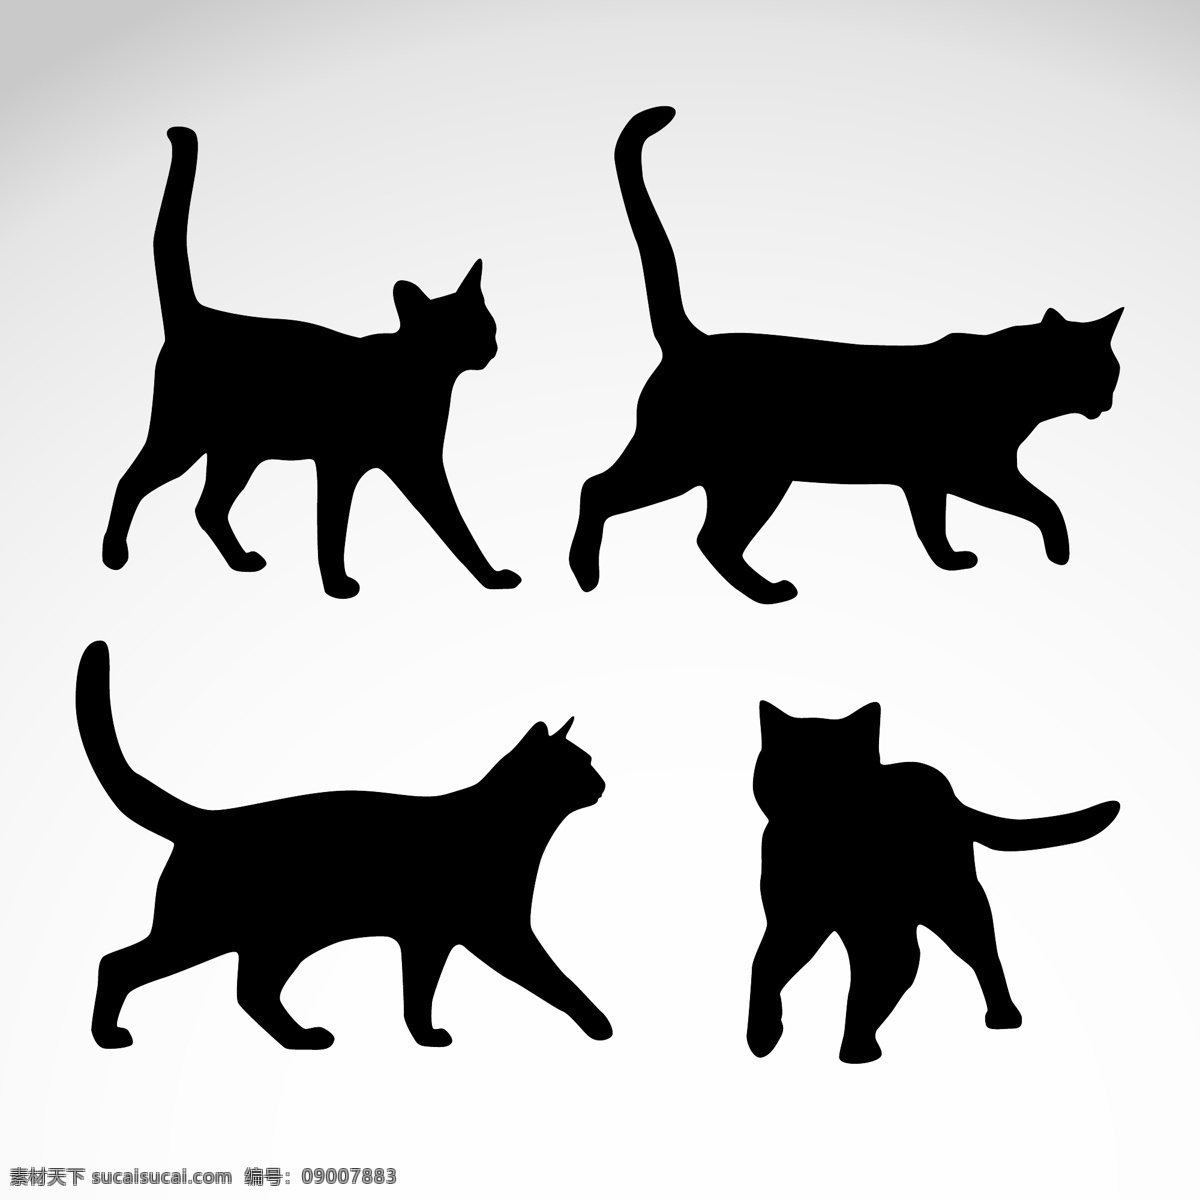 手绘猫素材 猫 卡通猫 可爱猫 动物 卡通动物 卡通设计 矢量素材